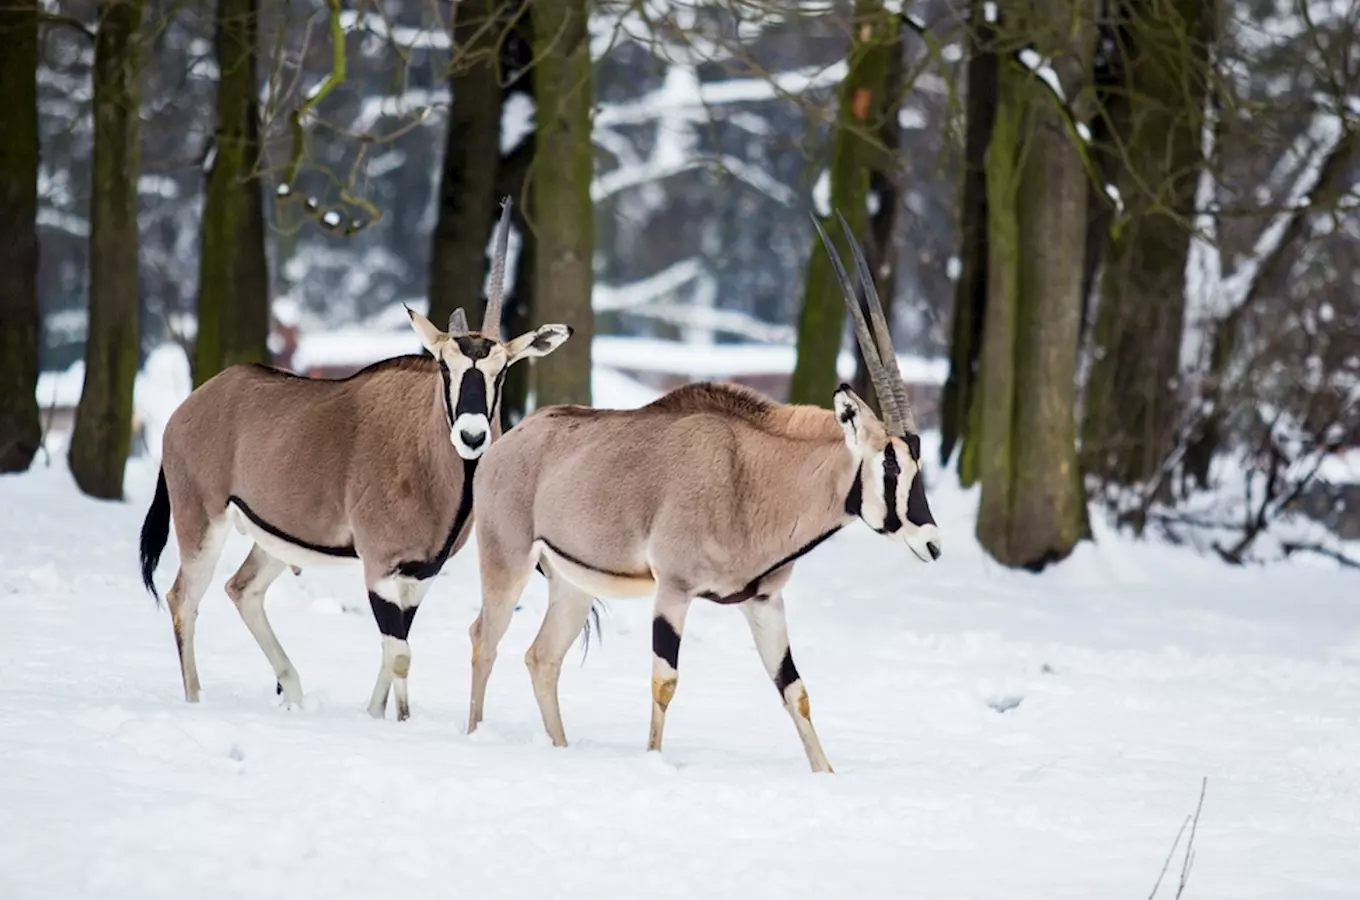 Vánoce v Zoo Ostrava přiblíží živou přírodu všem návštěvníkům